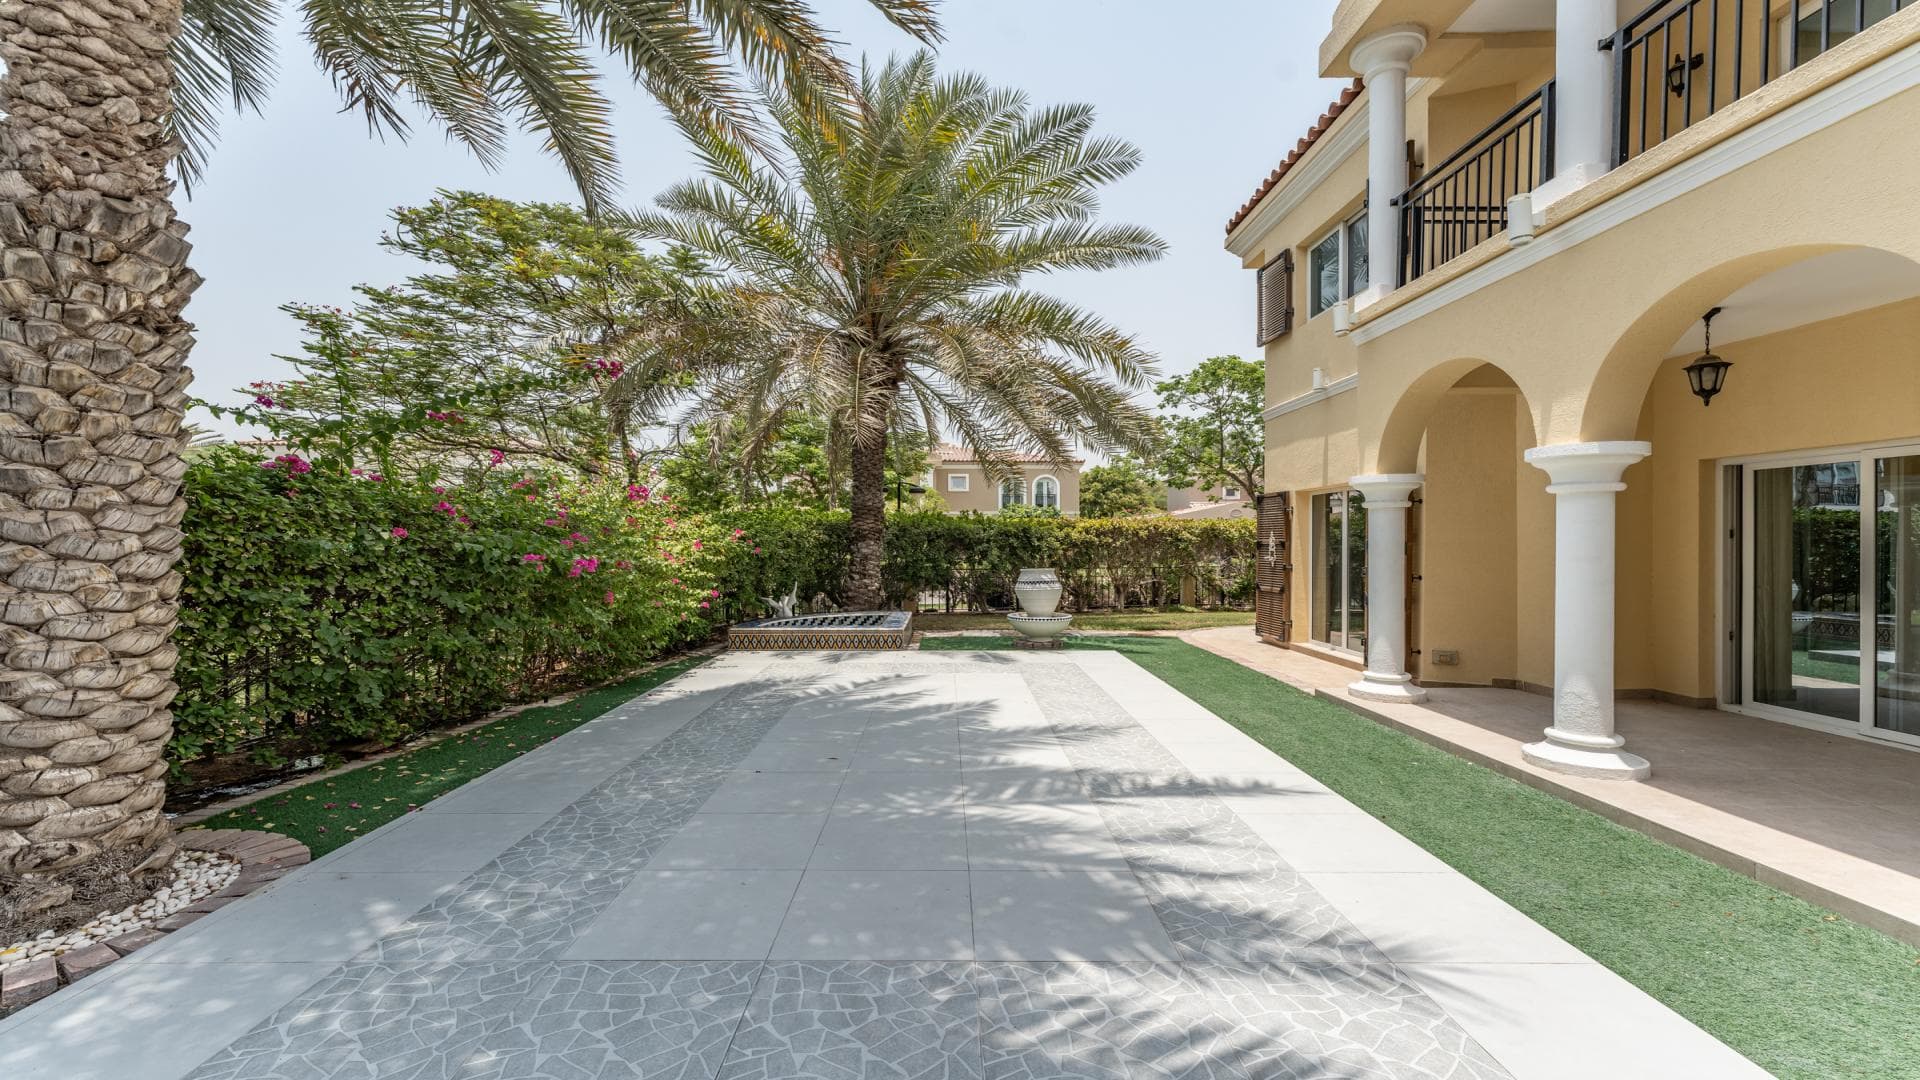 5 Bedroom Villa For Rent Al Thamam 36 Lp36037 9af3776302c6480.jpg